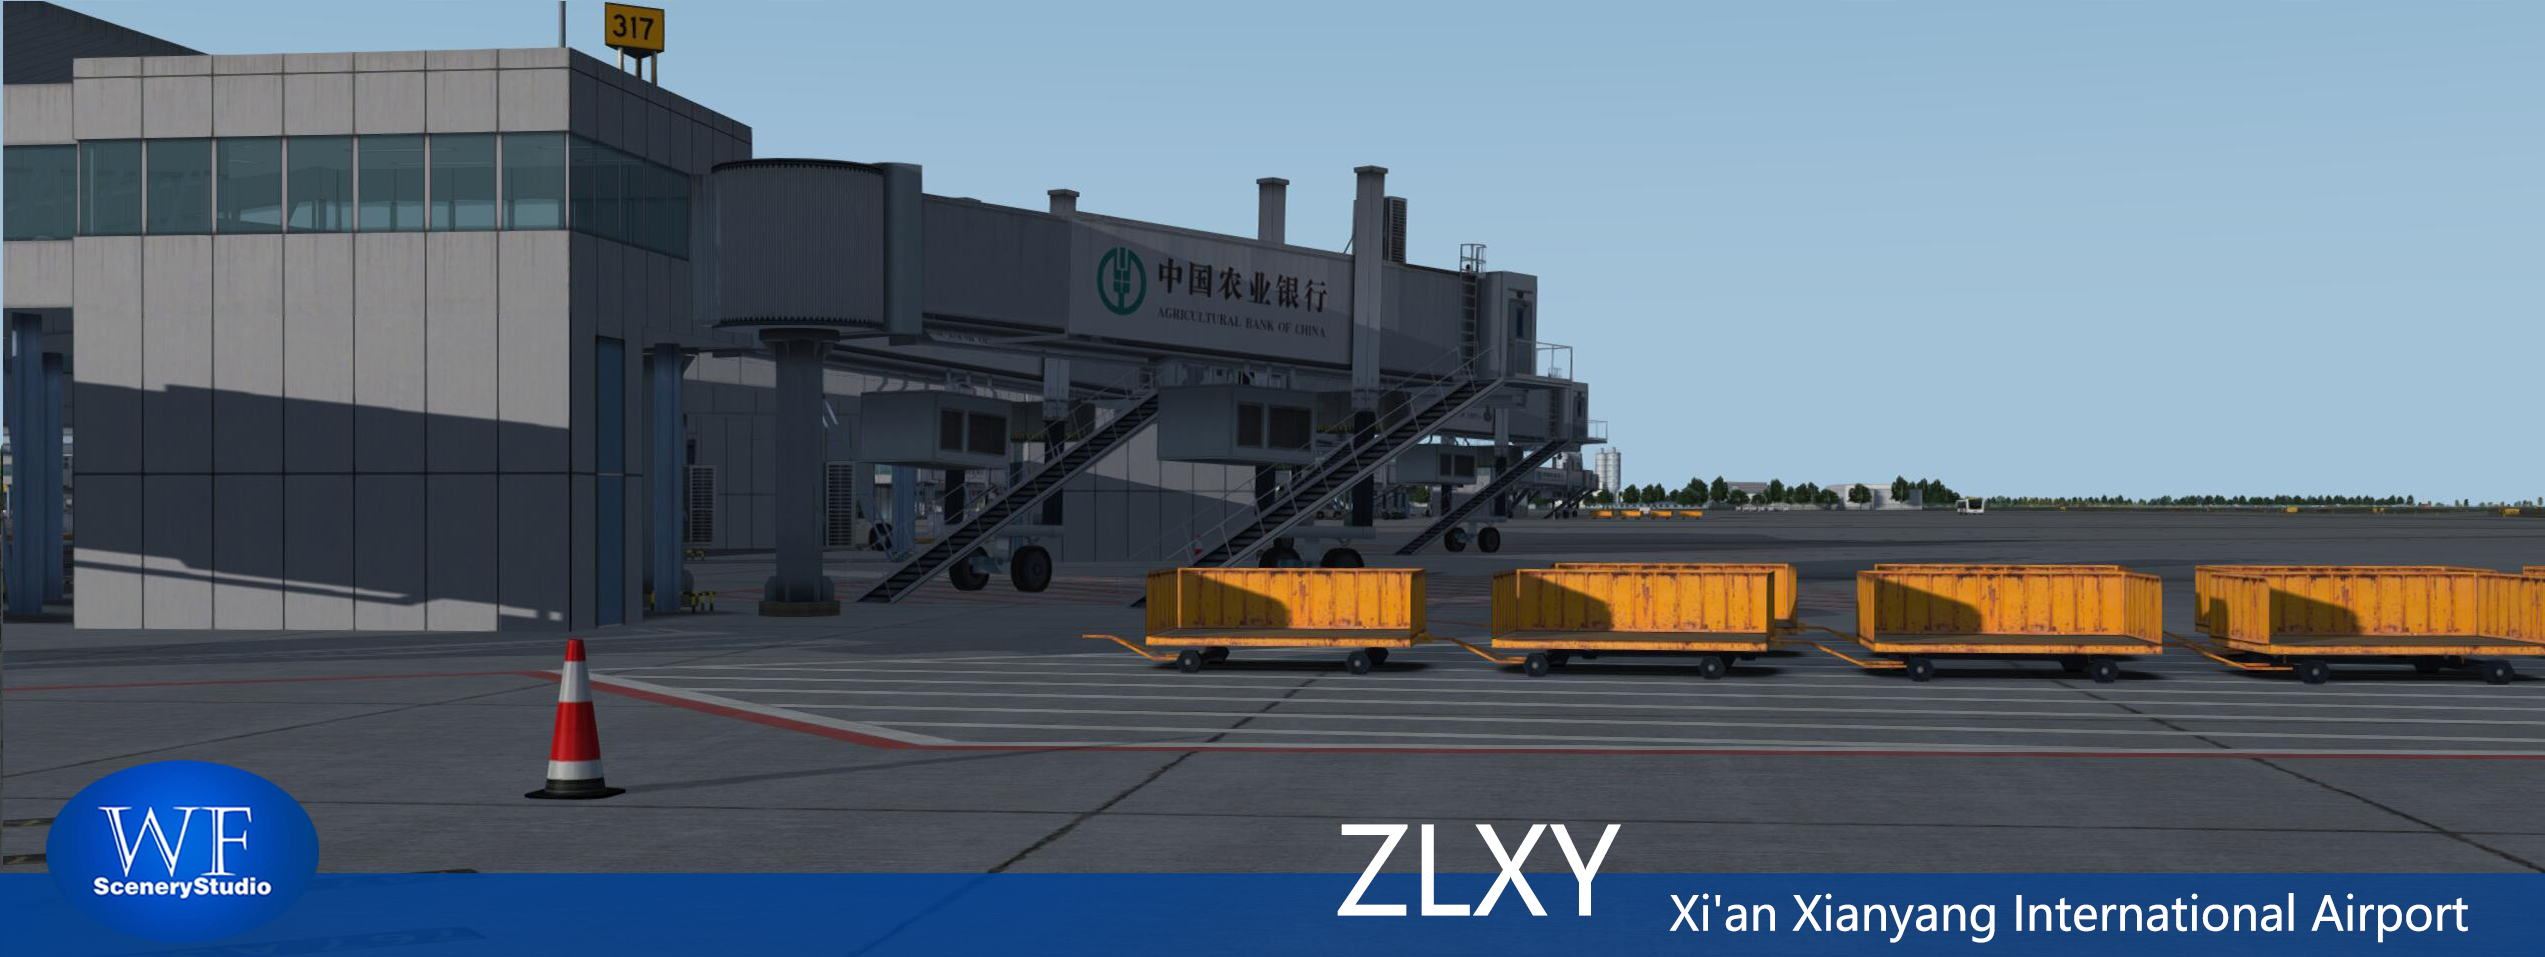 西安咸阳国际机场FSX和P3DV3 版本发布-7870 